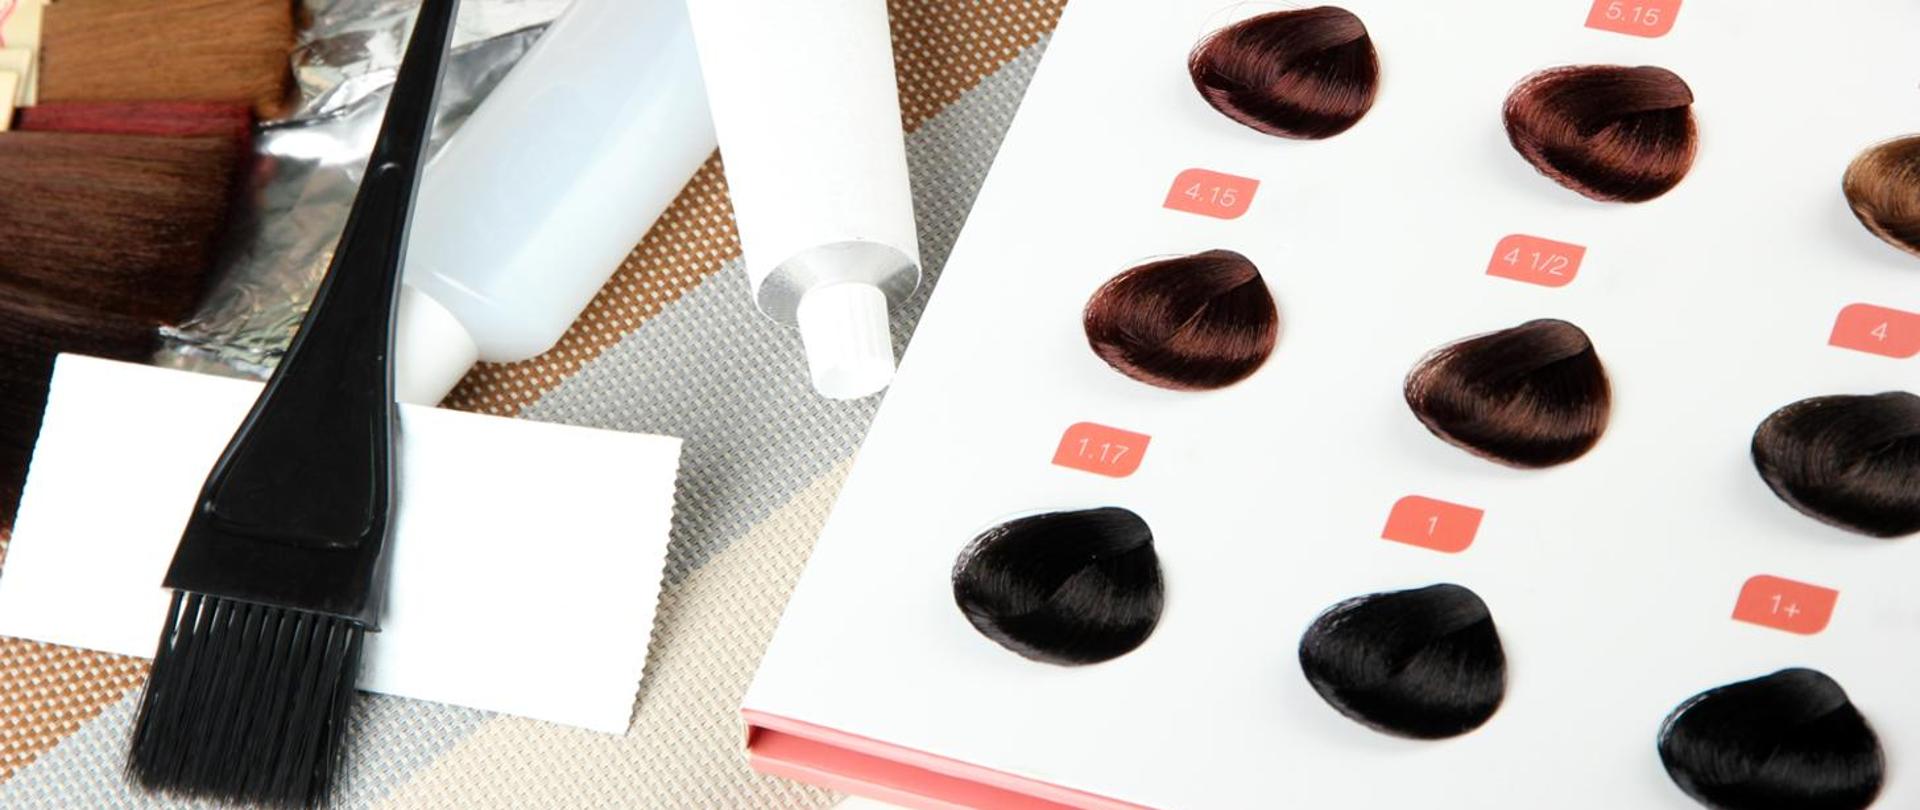 zestaw do farbowania włosów, próbki kolorystyczne farb do włosów